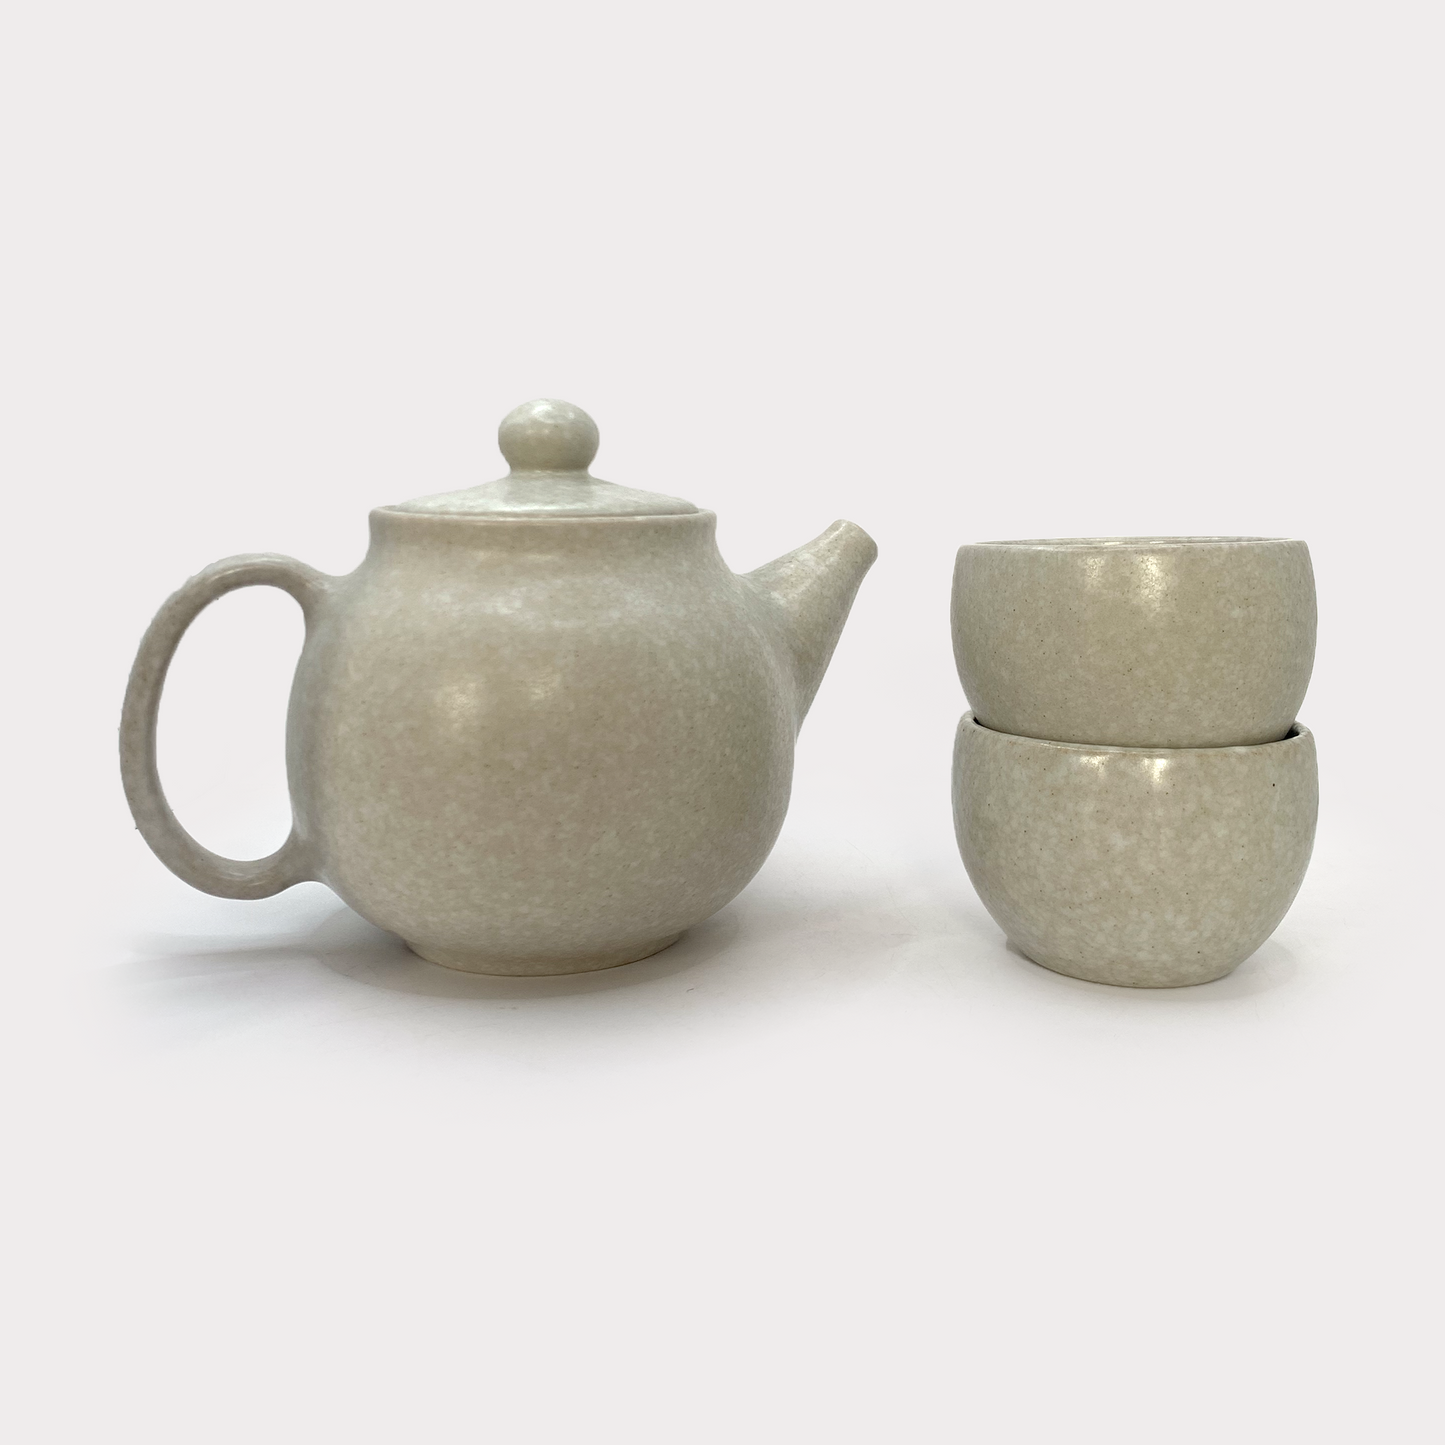 Teapot set